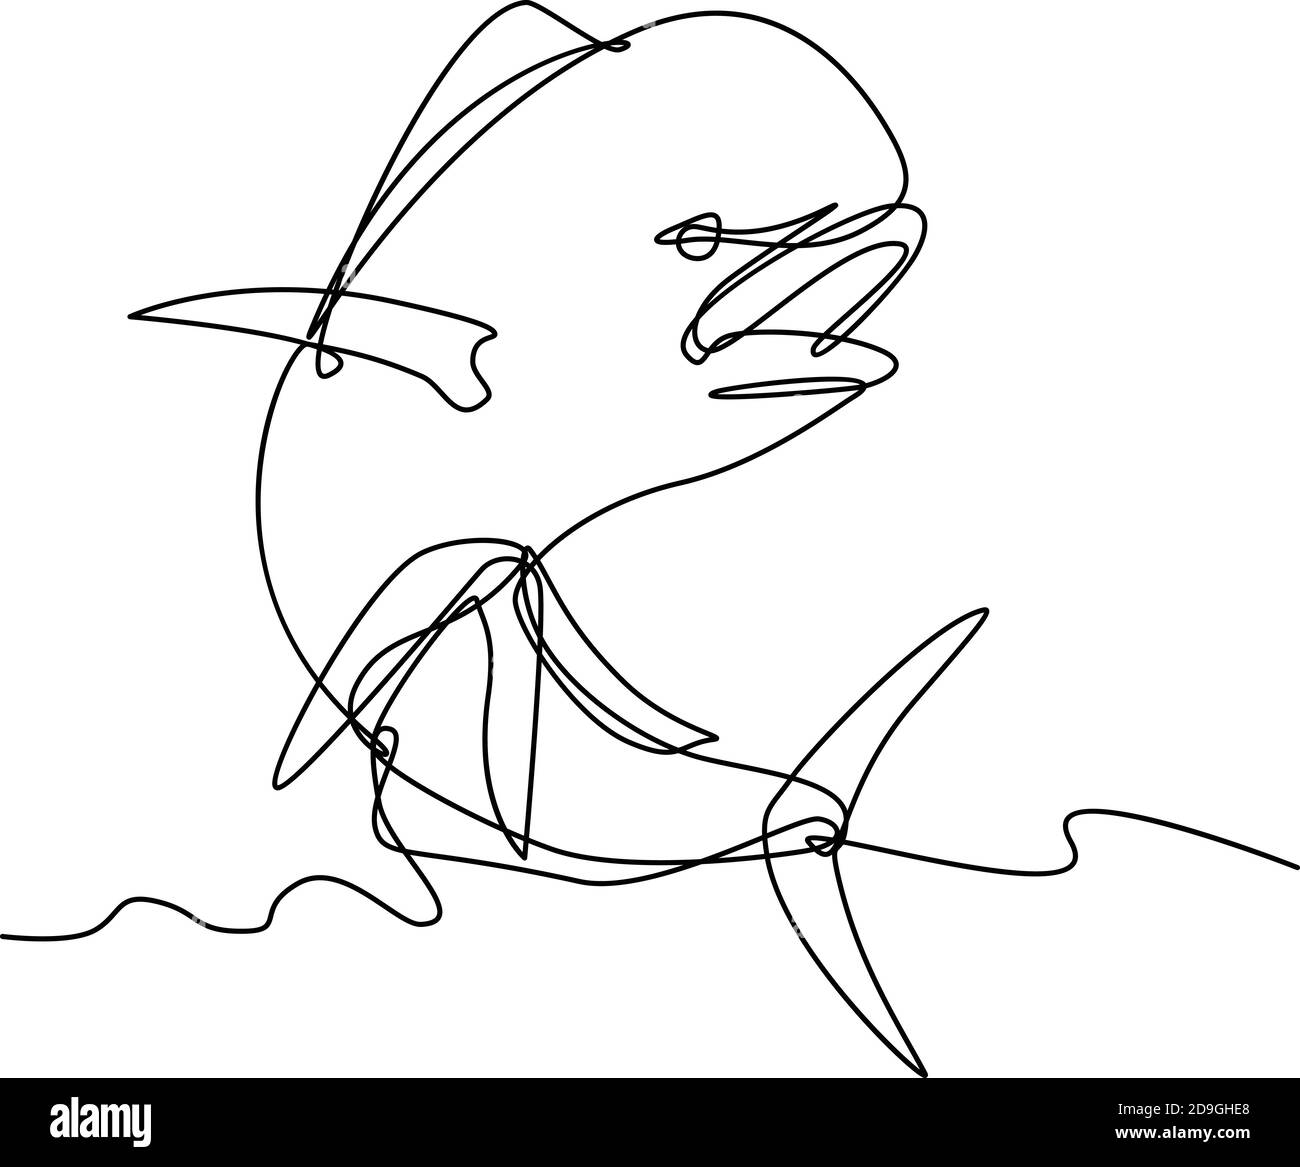 Illustrazione a linea continua di un mahi-mahi, dorado o dolphinfish comune (Coryphaena hippurus), un pesce alettato a raggi che abita in superficie, saltando su fatto io Illustrazione Vettoriale